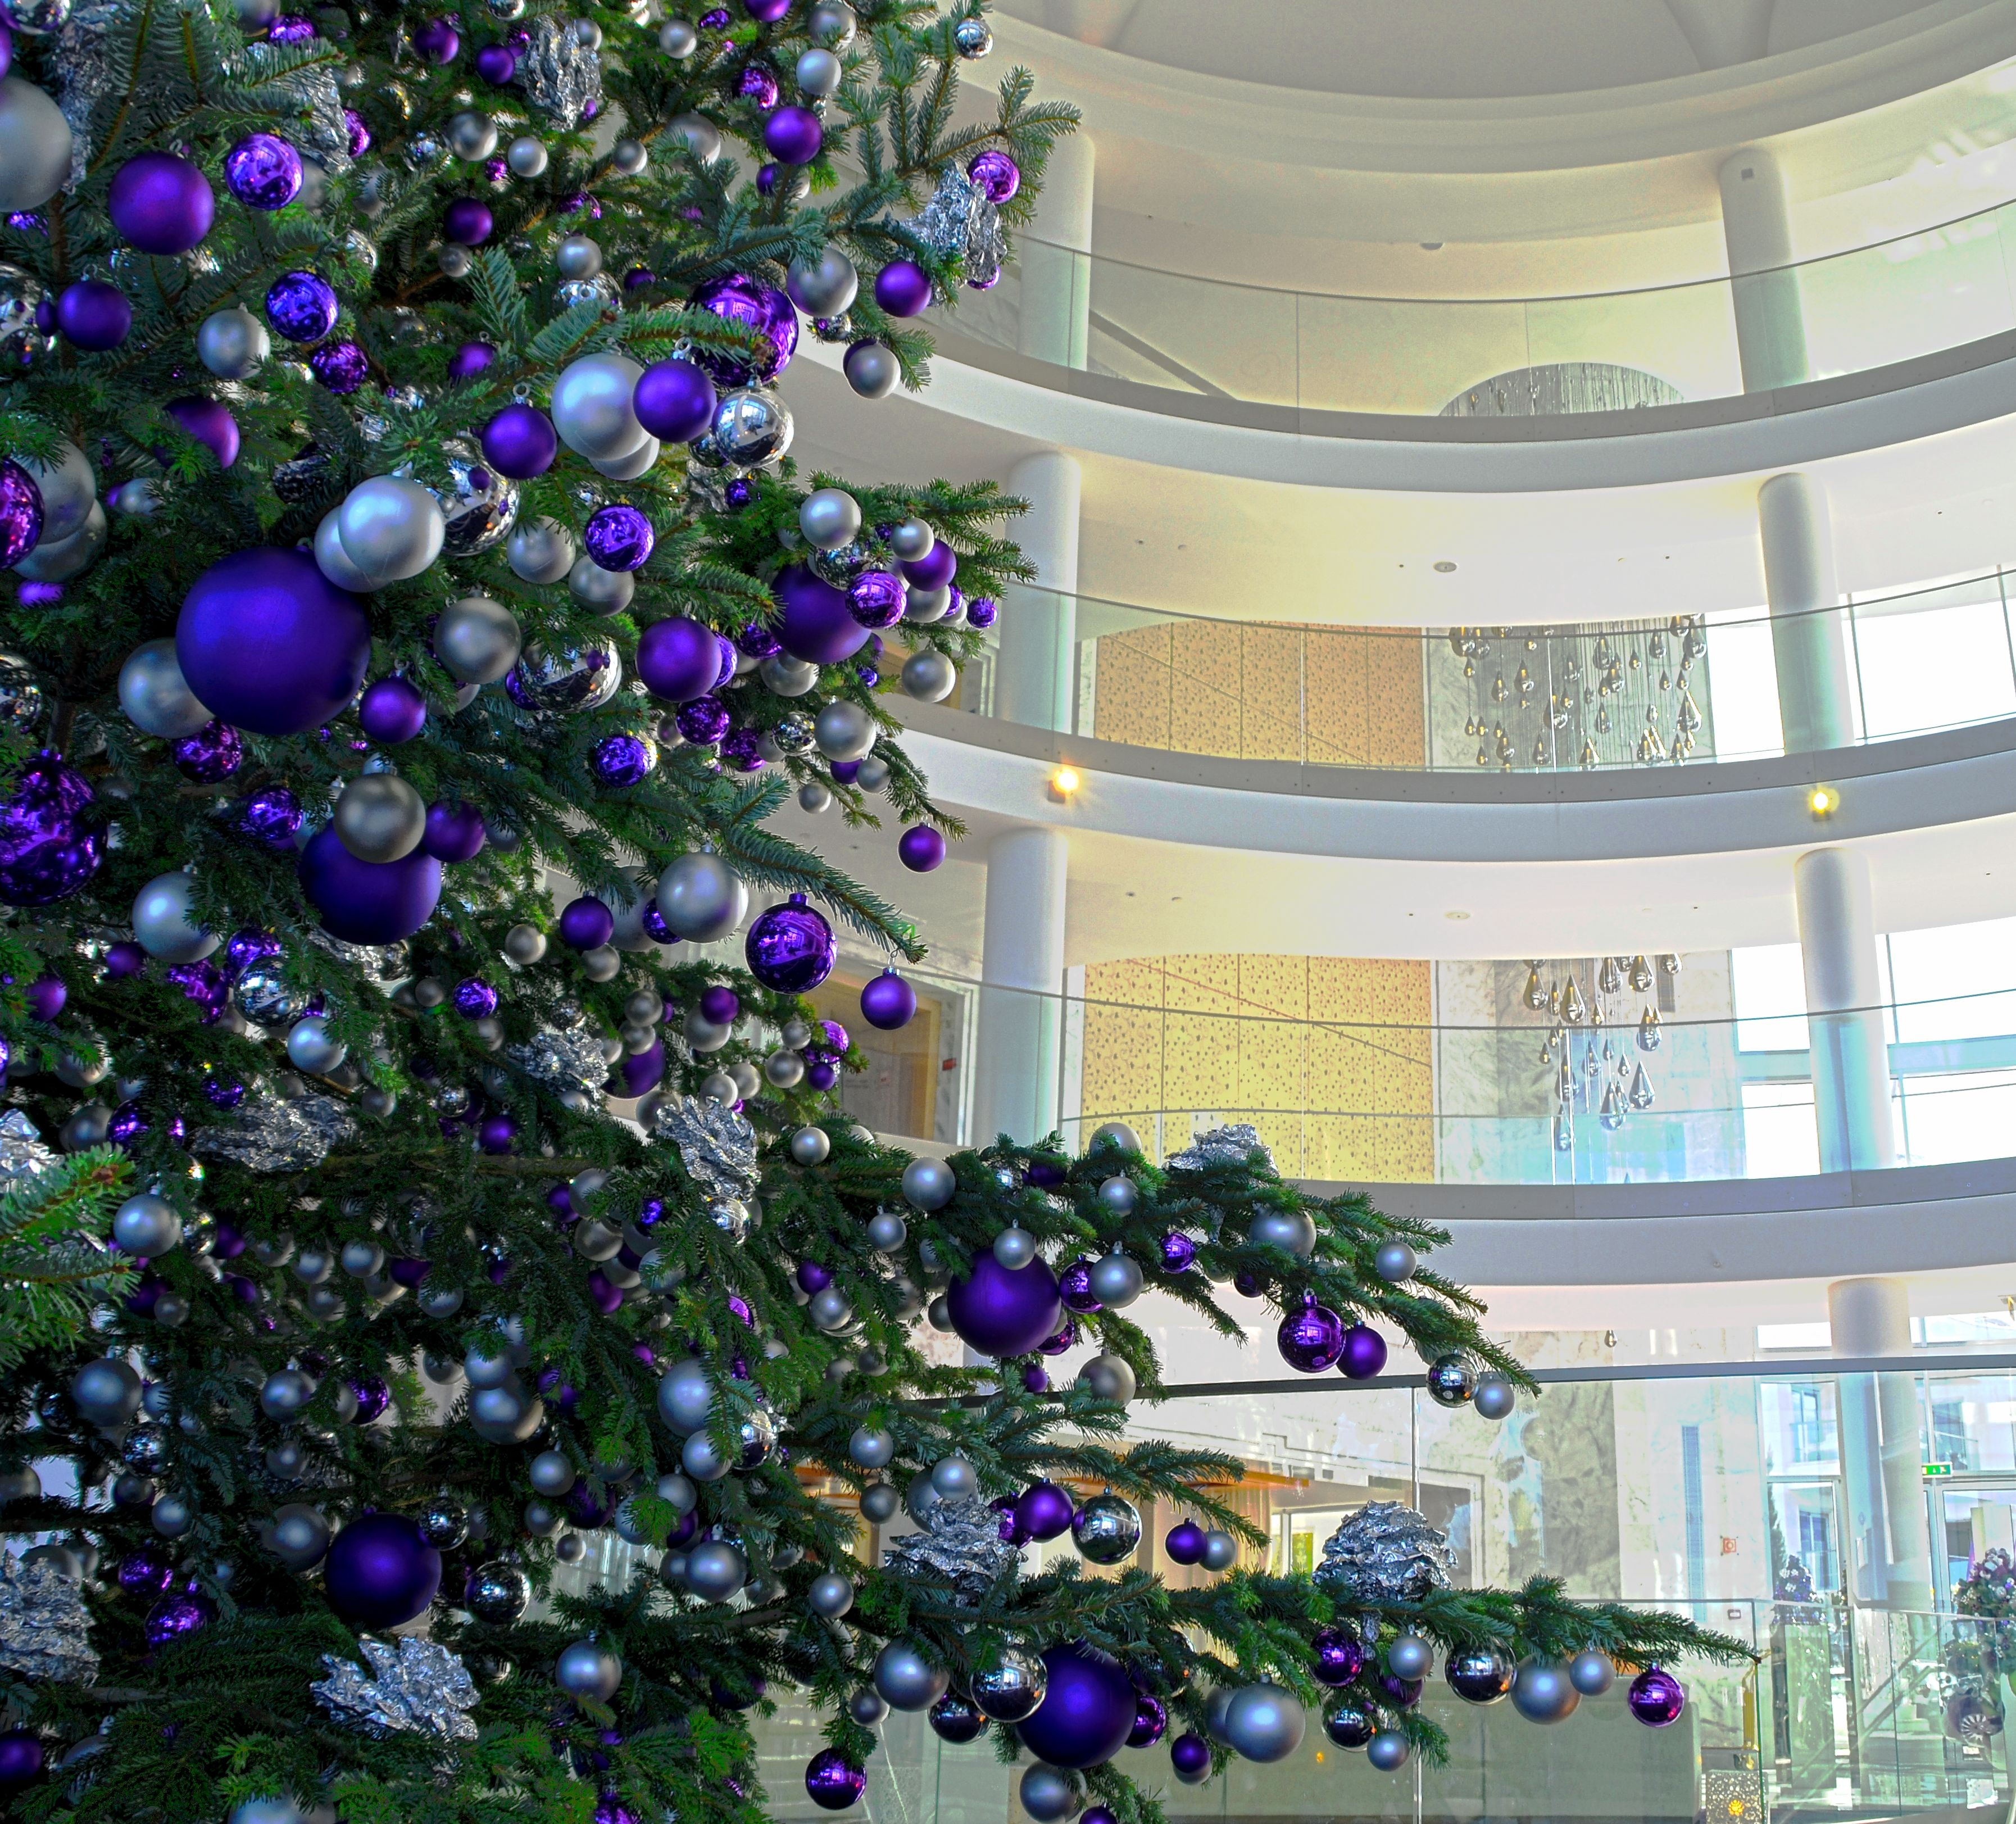 Weihnachtsbaum in der Lobby mit silbernen und lilafarbenen Kugeln